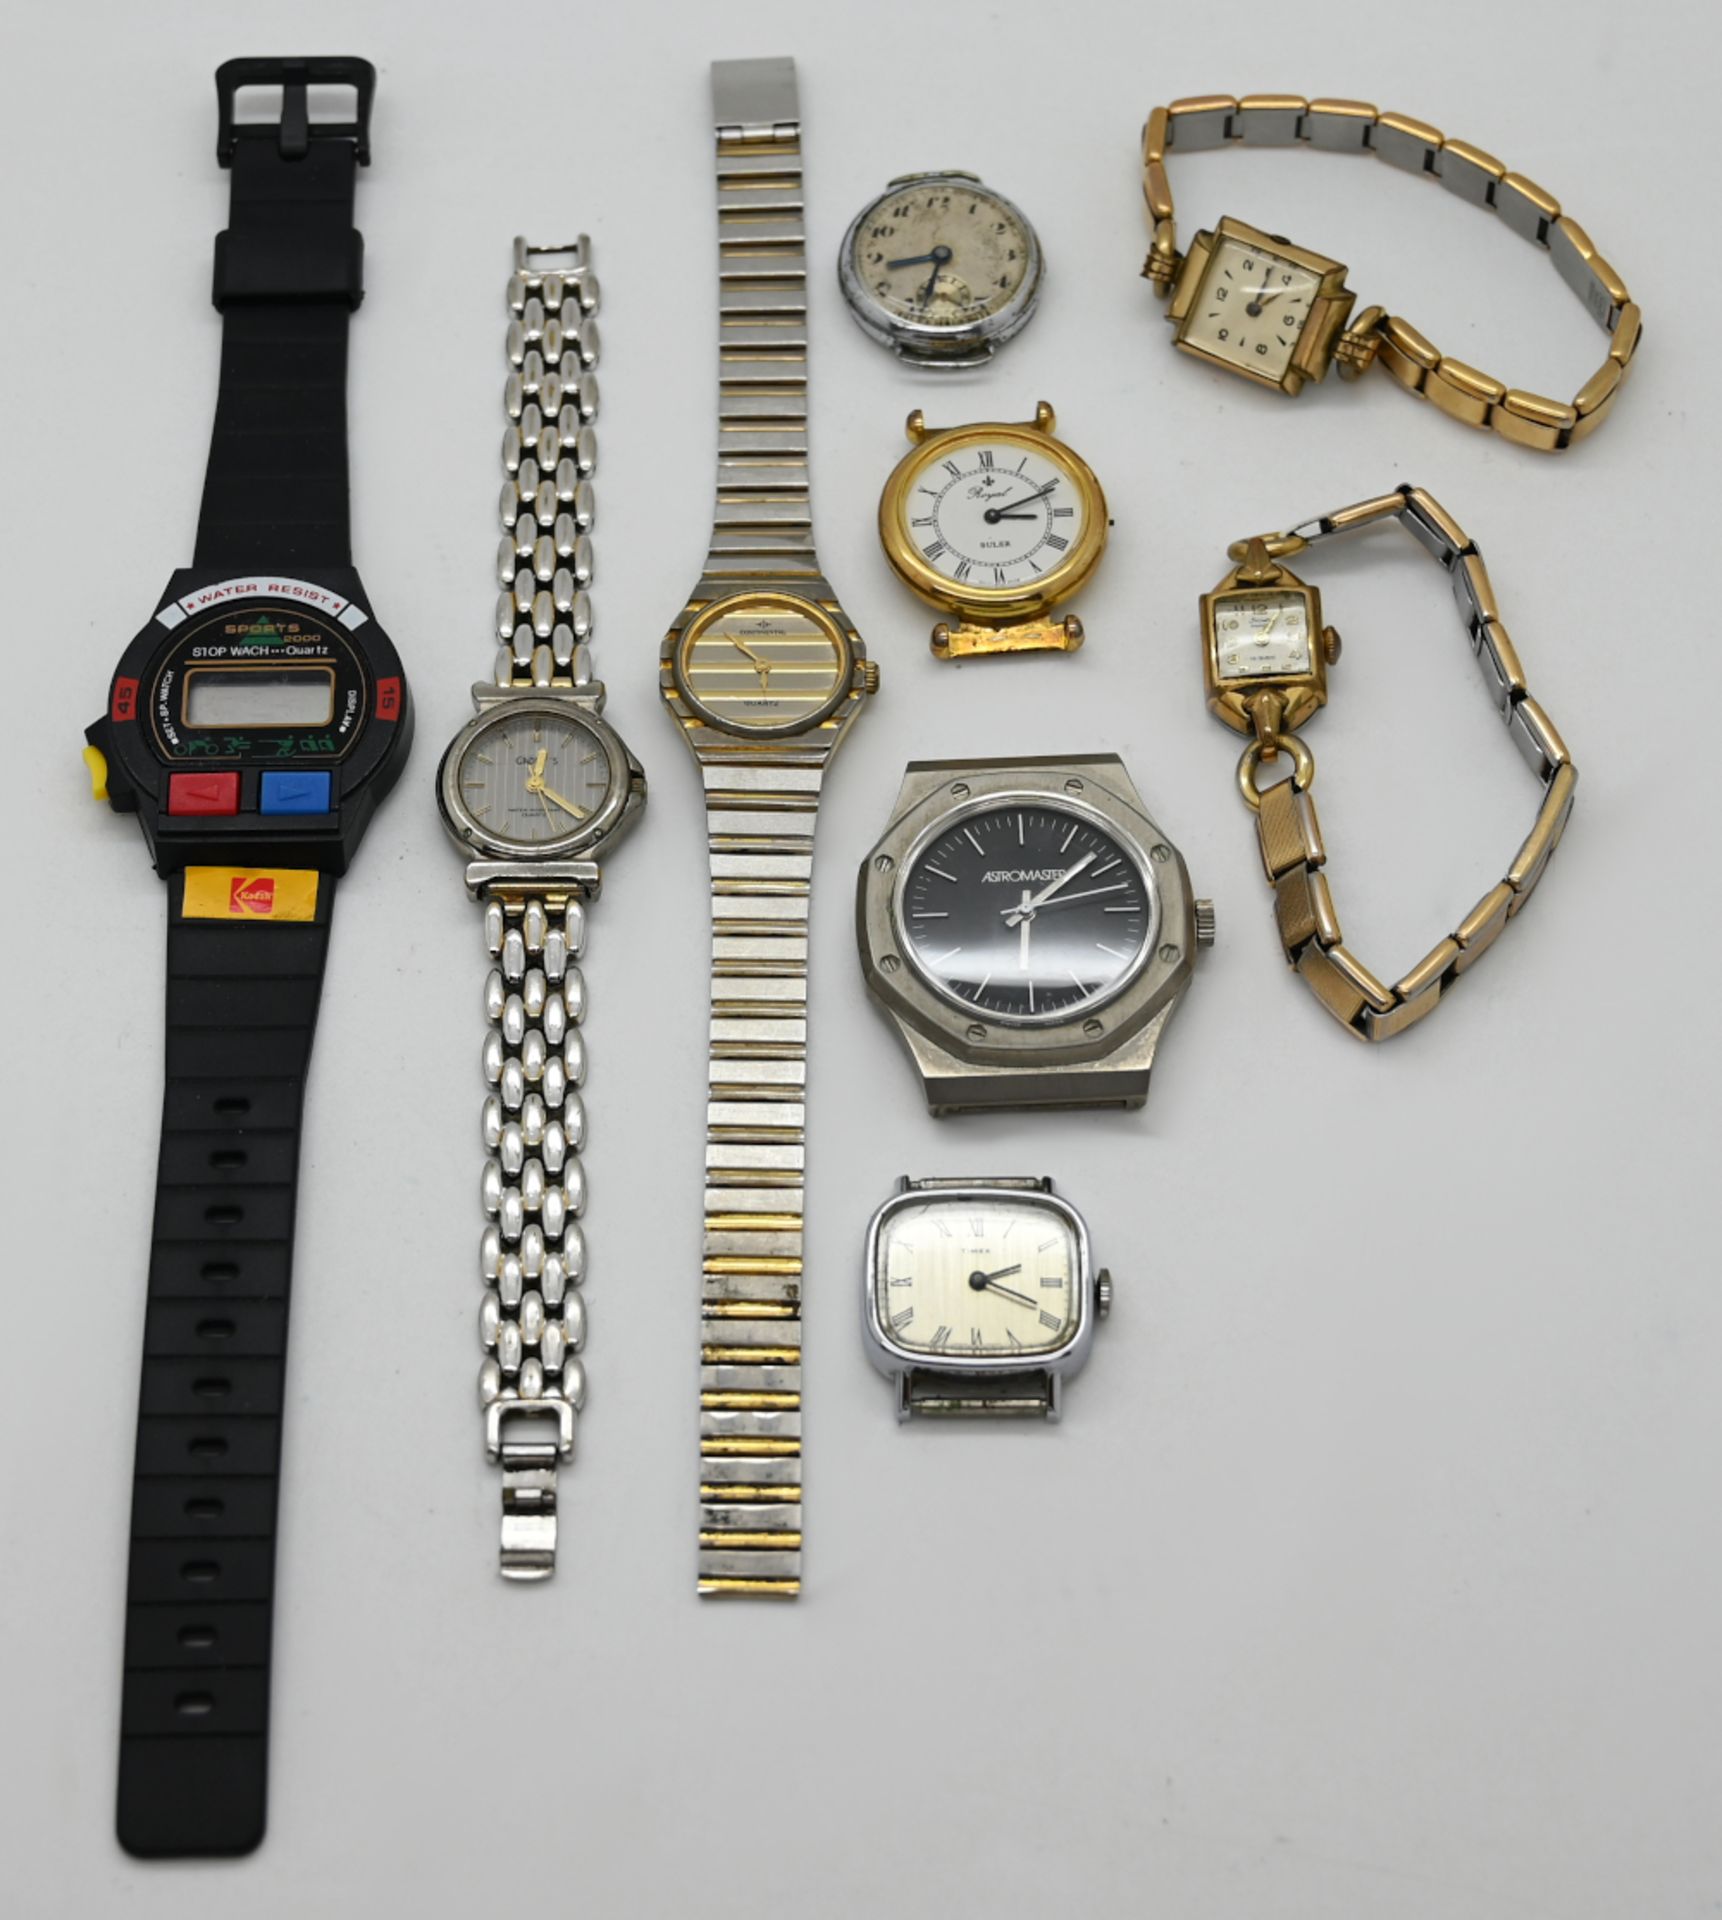 1 Uhrengehäuse ANKER GG 14ct., sowie verschiedene Armbanduhren: Metall, Kunststoff, Leder u.a. jew. - Bild 2 aus 2